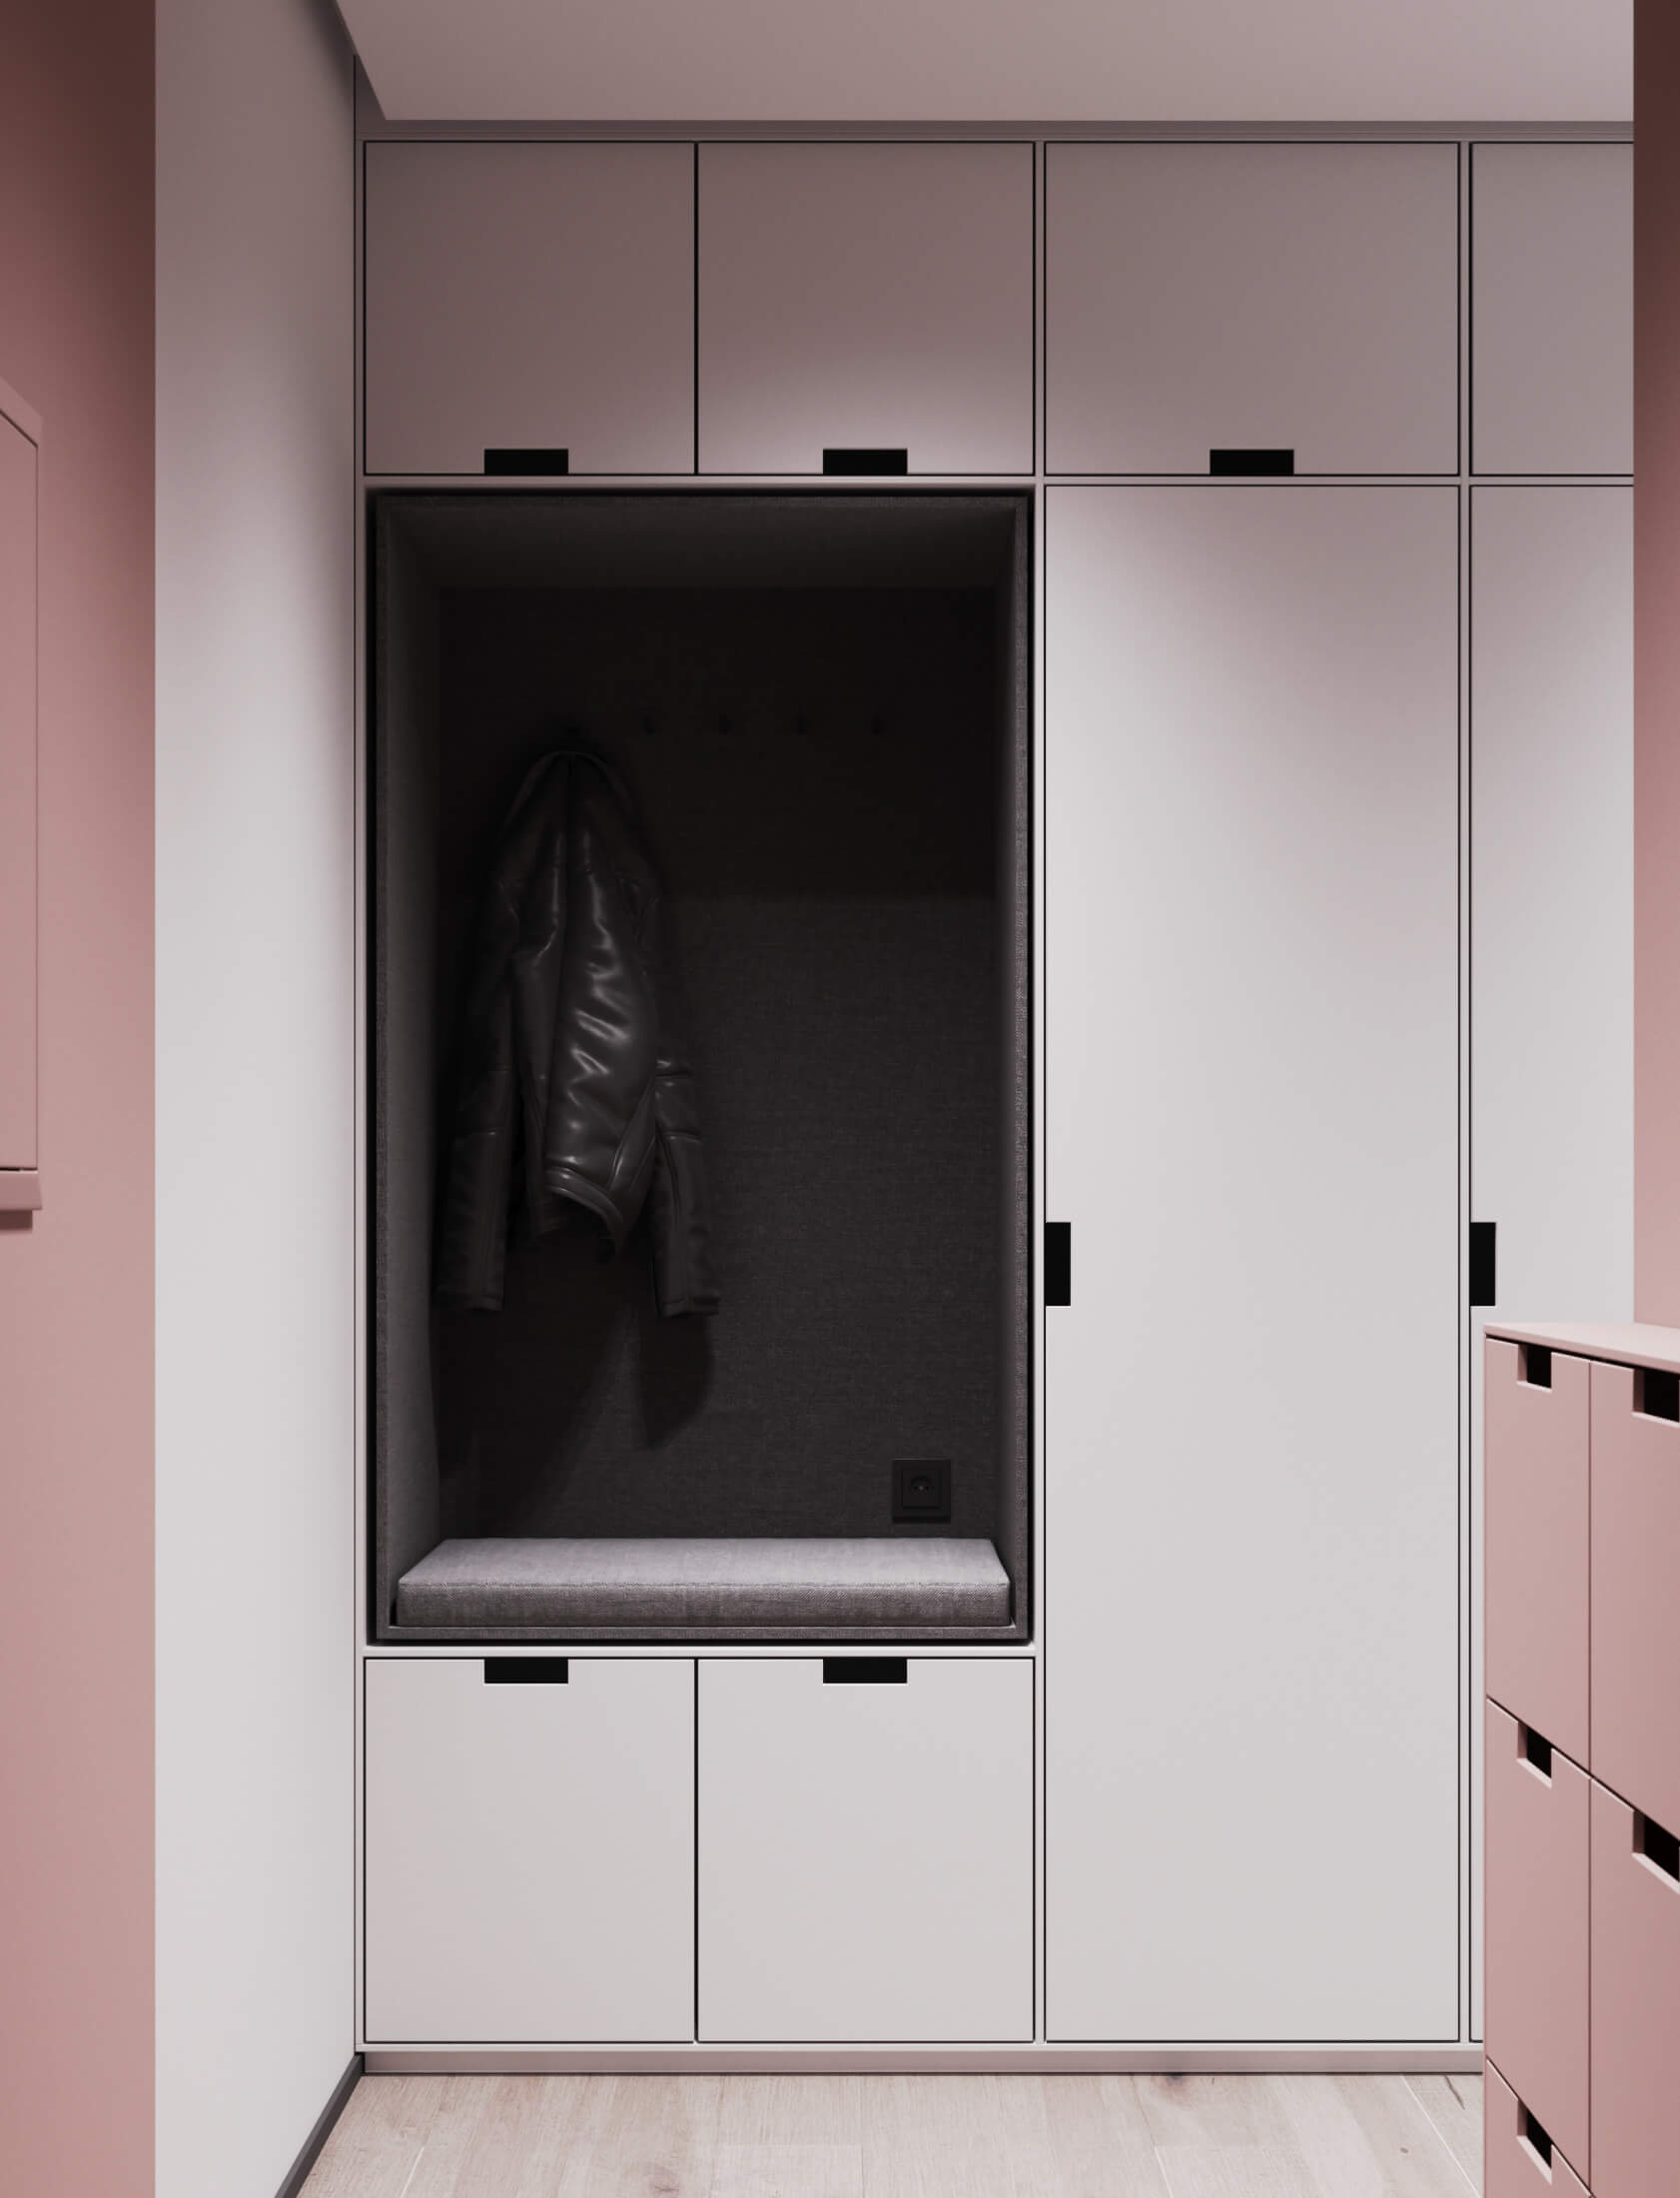 淡粉色+灰色 法国86平米简约公寓设计